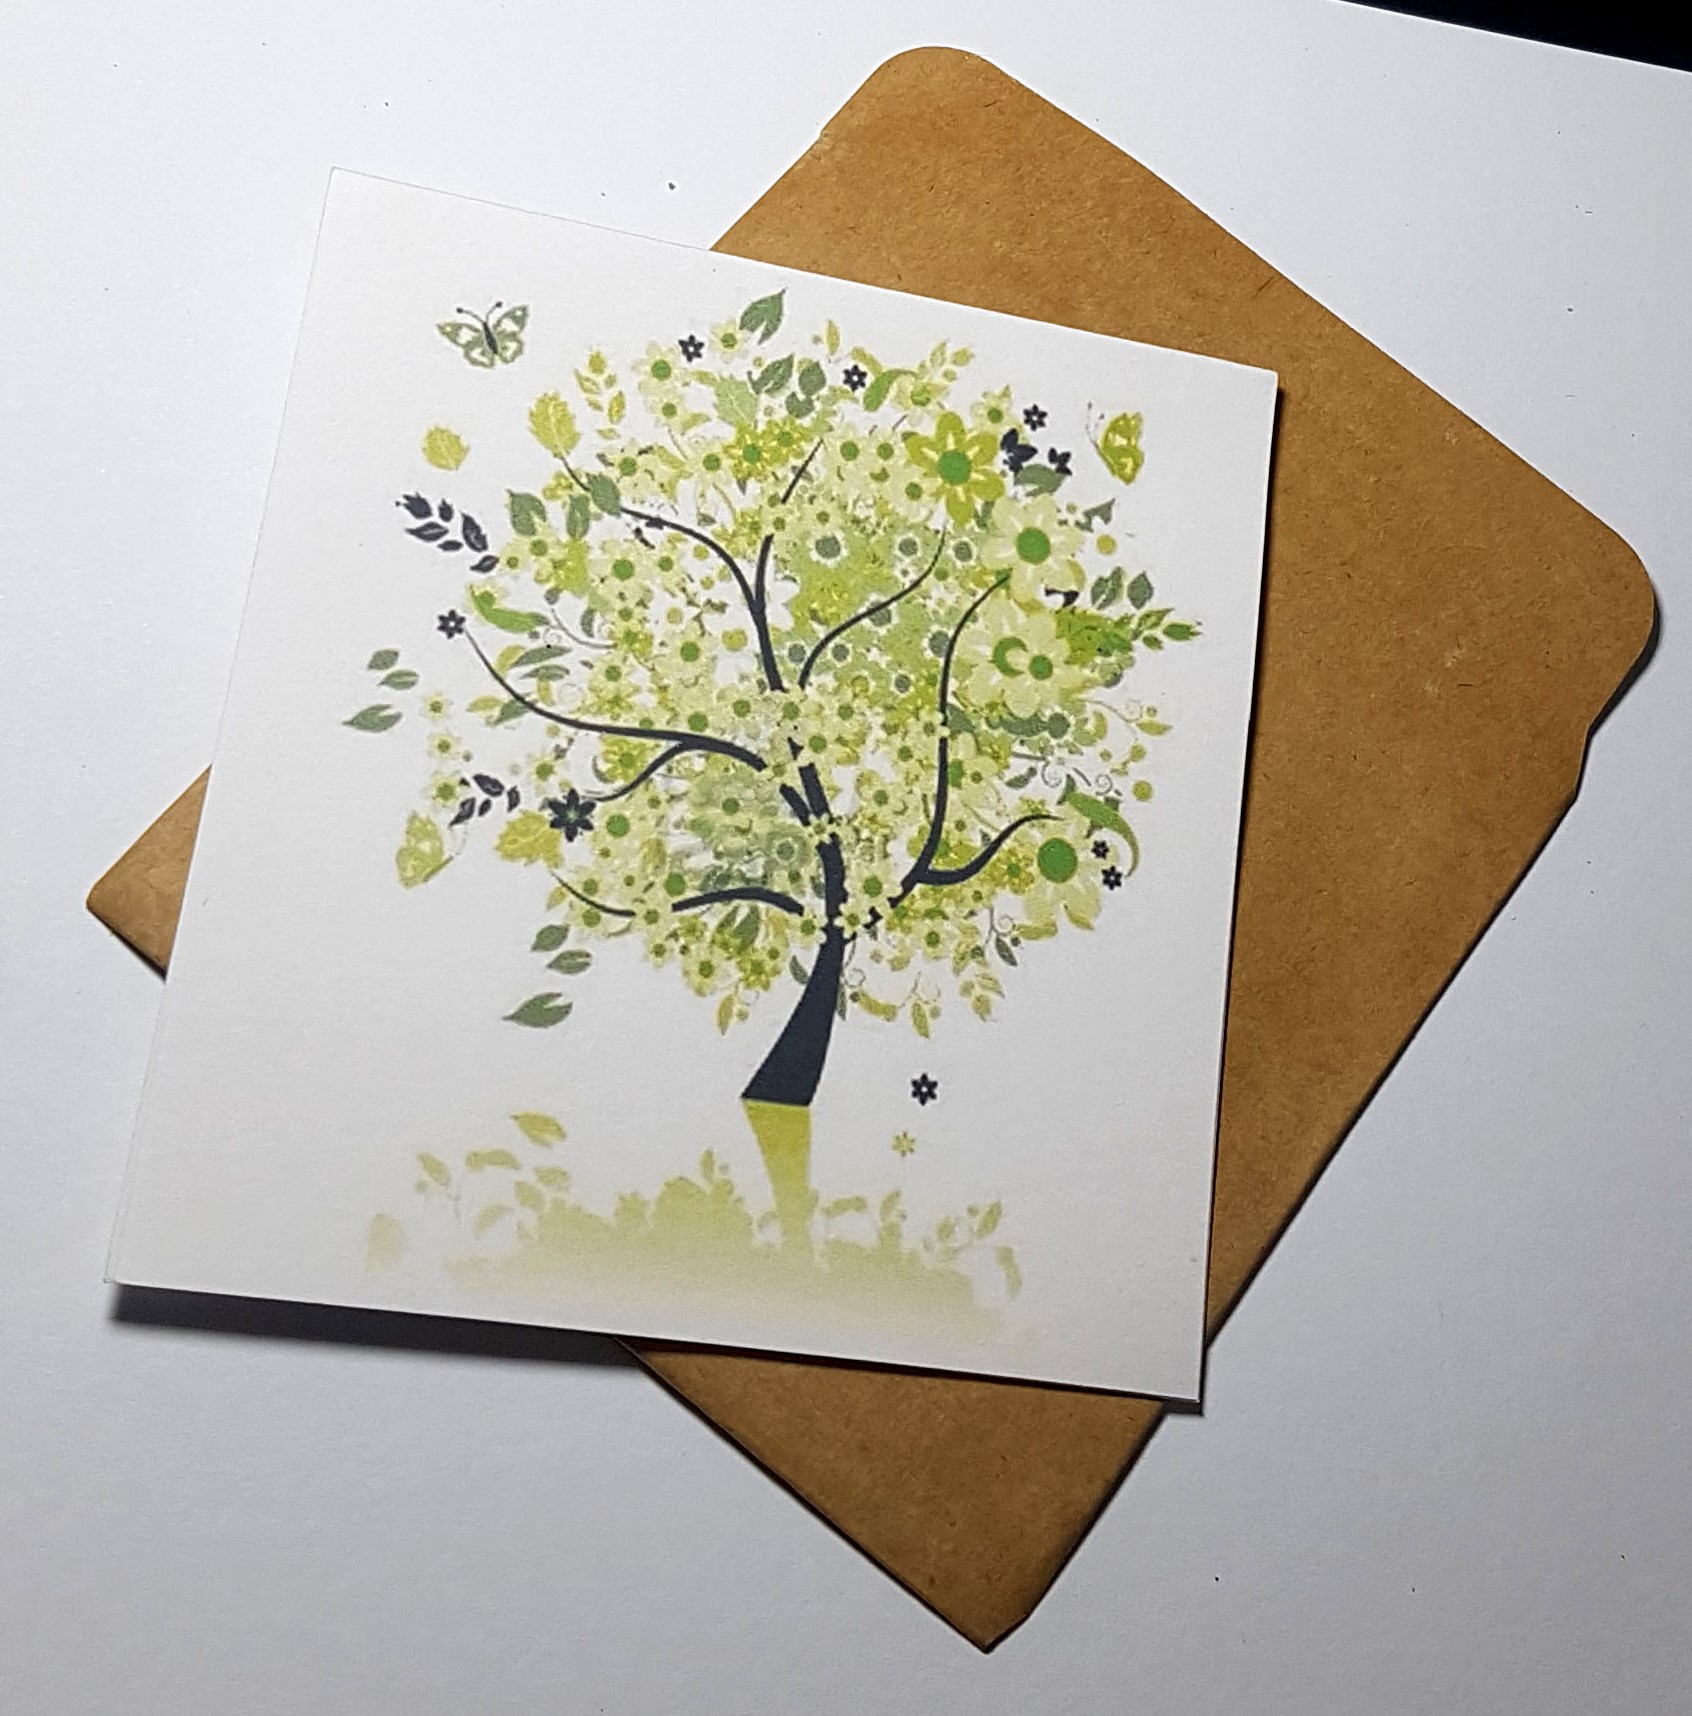 Thiệp in hình cây phong cách làm card quà cám ơn ,chúc mừng sinh nhật và giử tặng người thân yêu